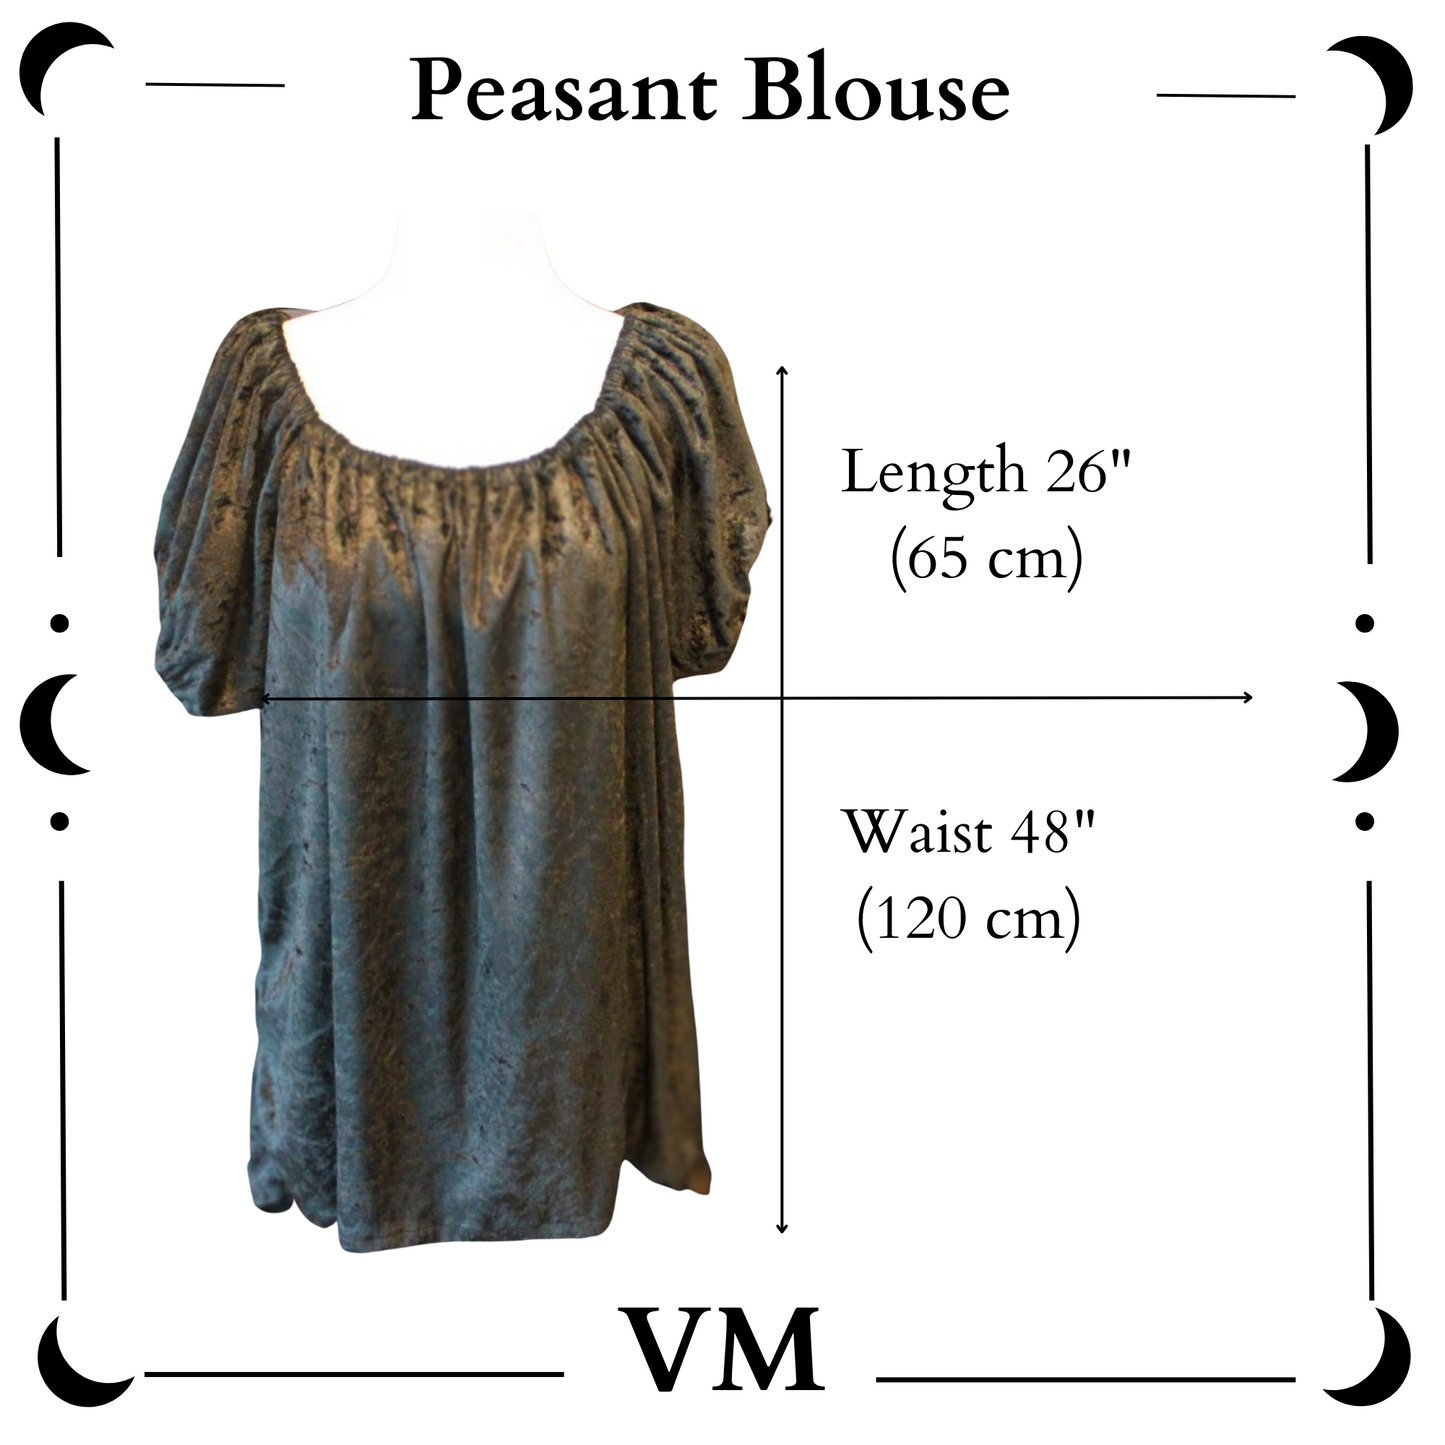 The VM Velvet Peasant Blouse